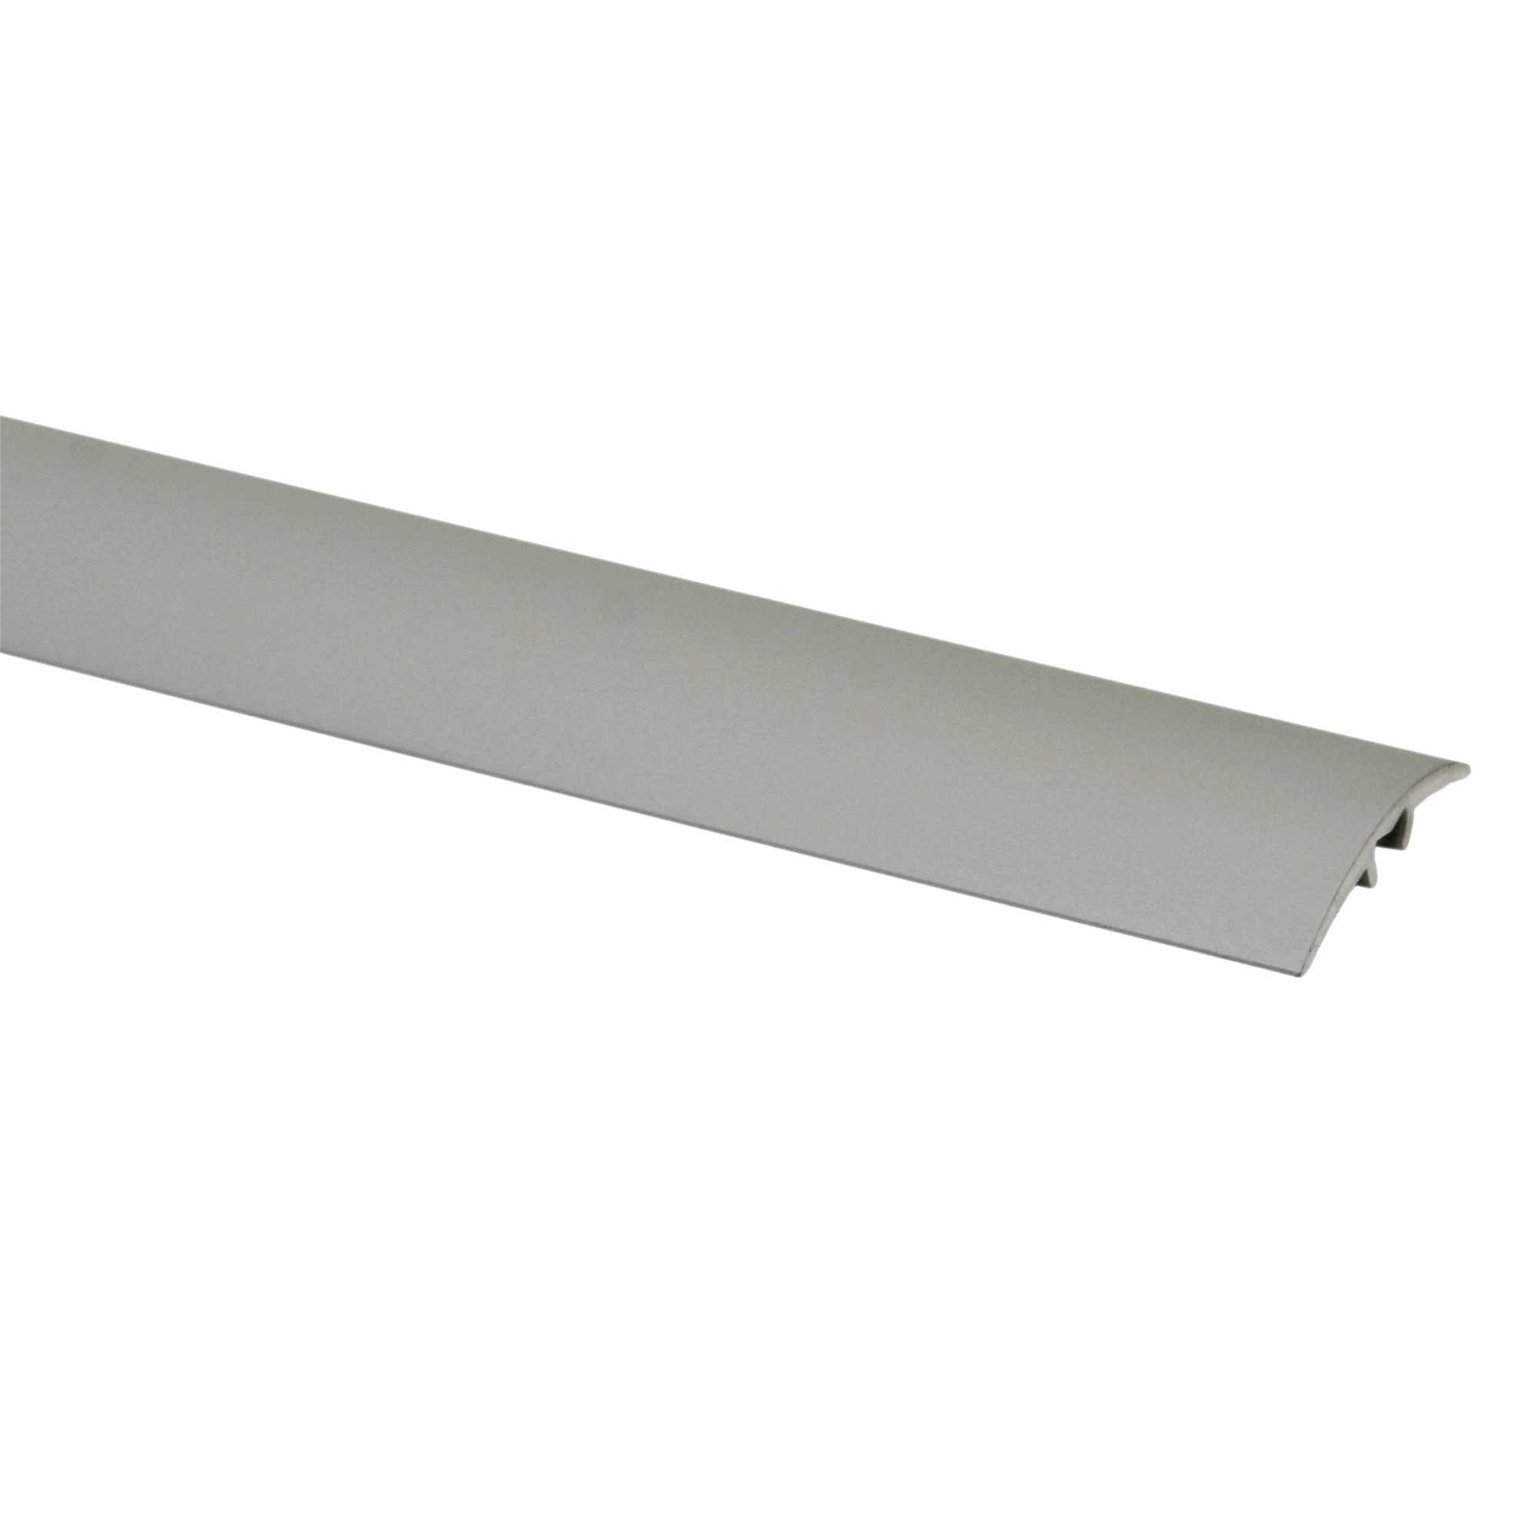 Aliumininė grindų juostelė PR3 A3, titano sp., 28 mm pločio, 93 cm ilgio - 1